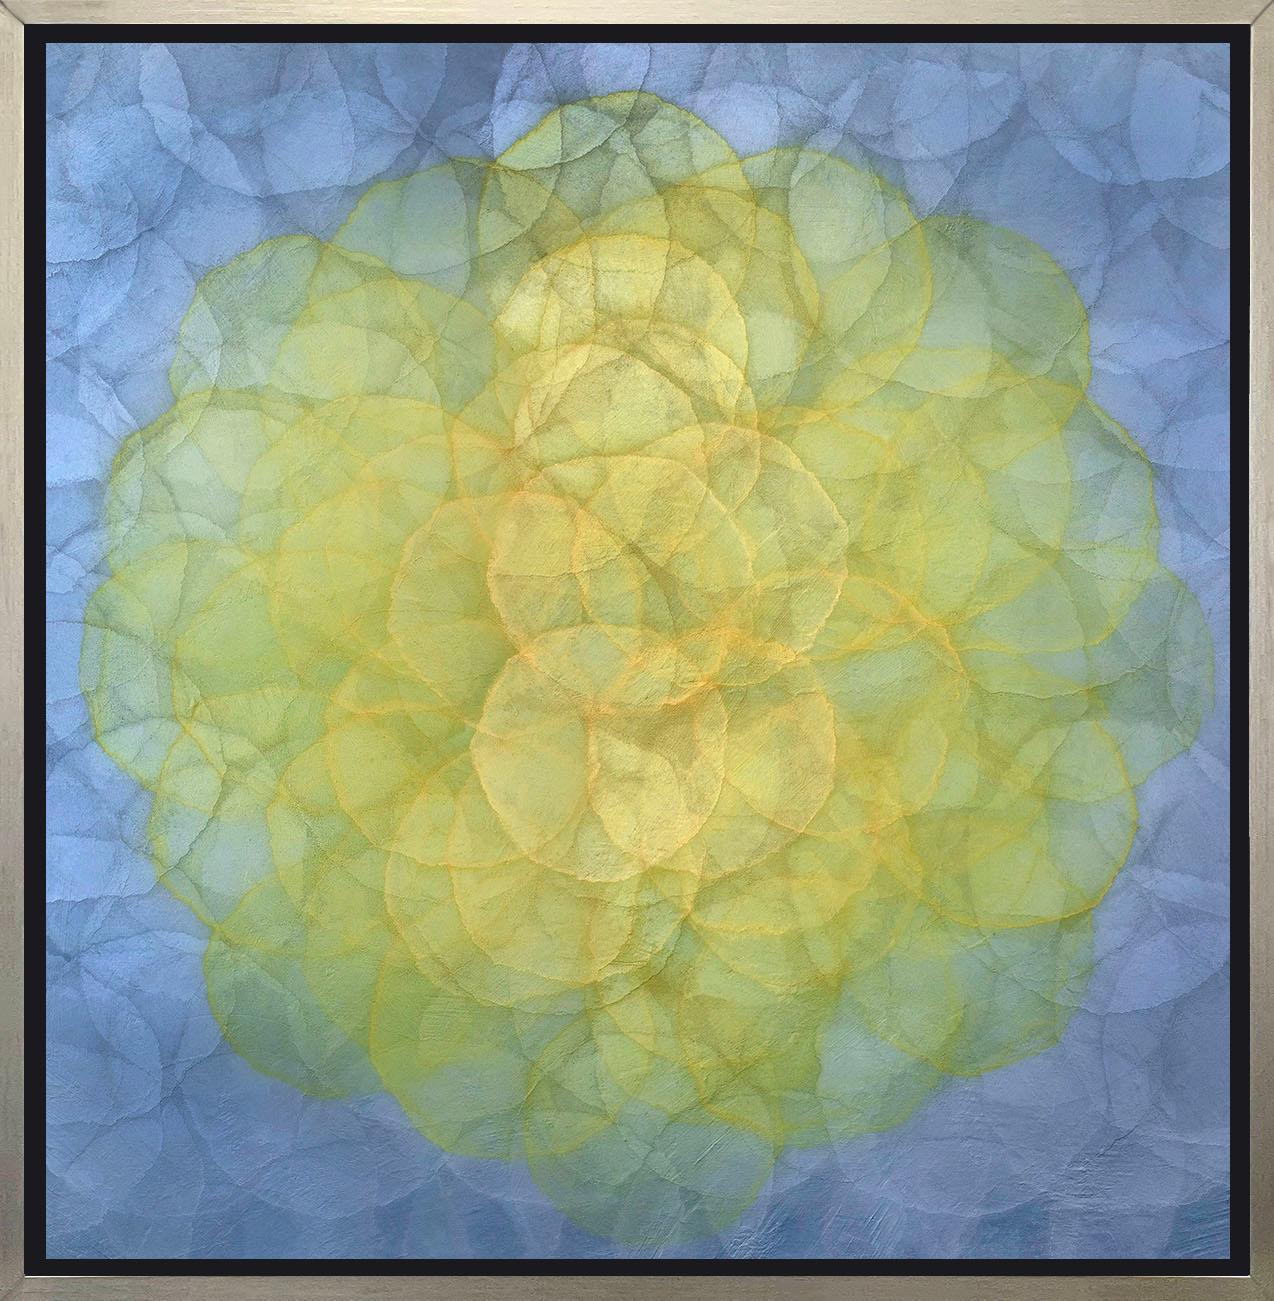 Abstract Print Roger Mudre - "Triteleia", impression giclée encadrée à édition limitée, 24" x 24".